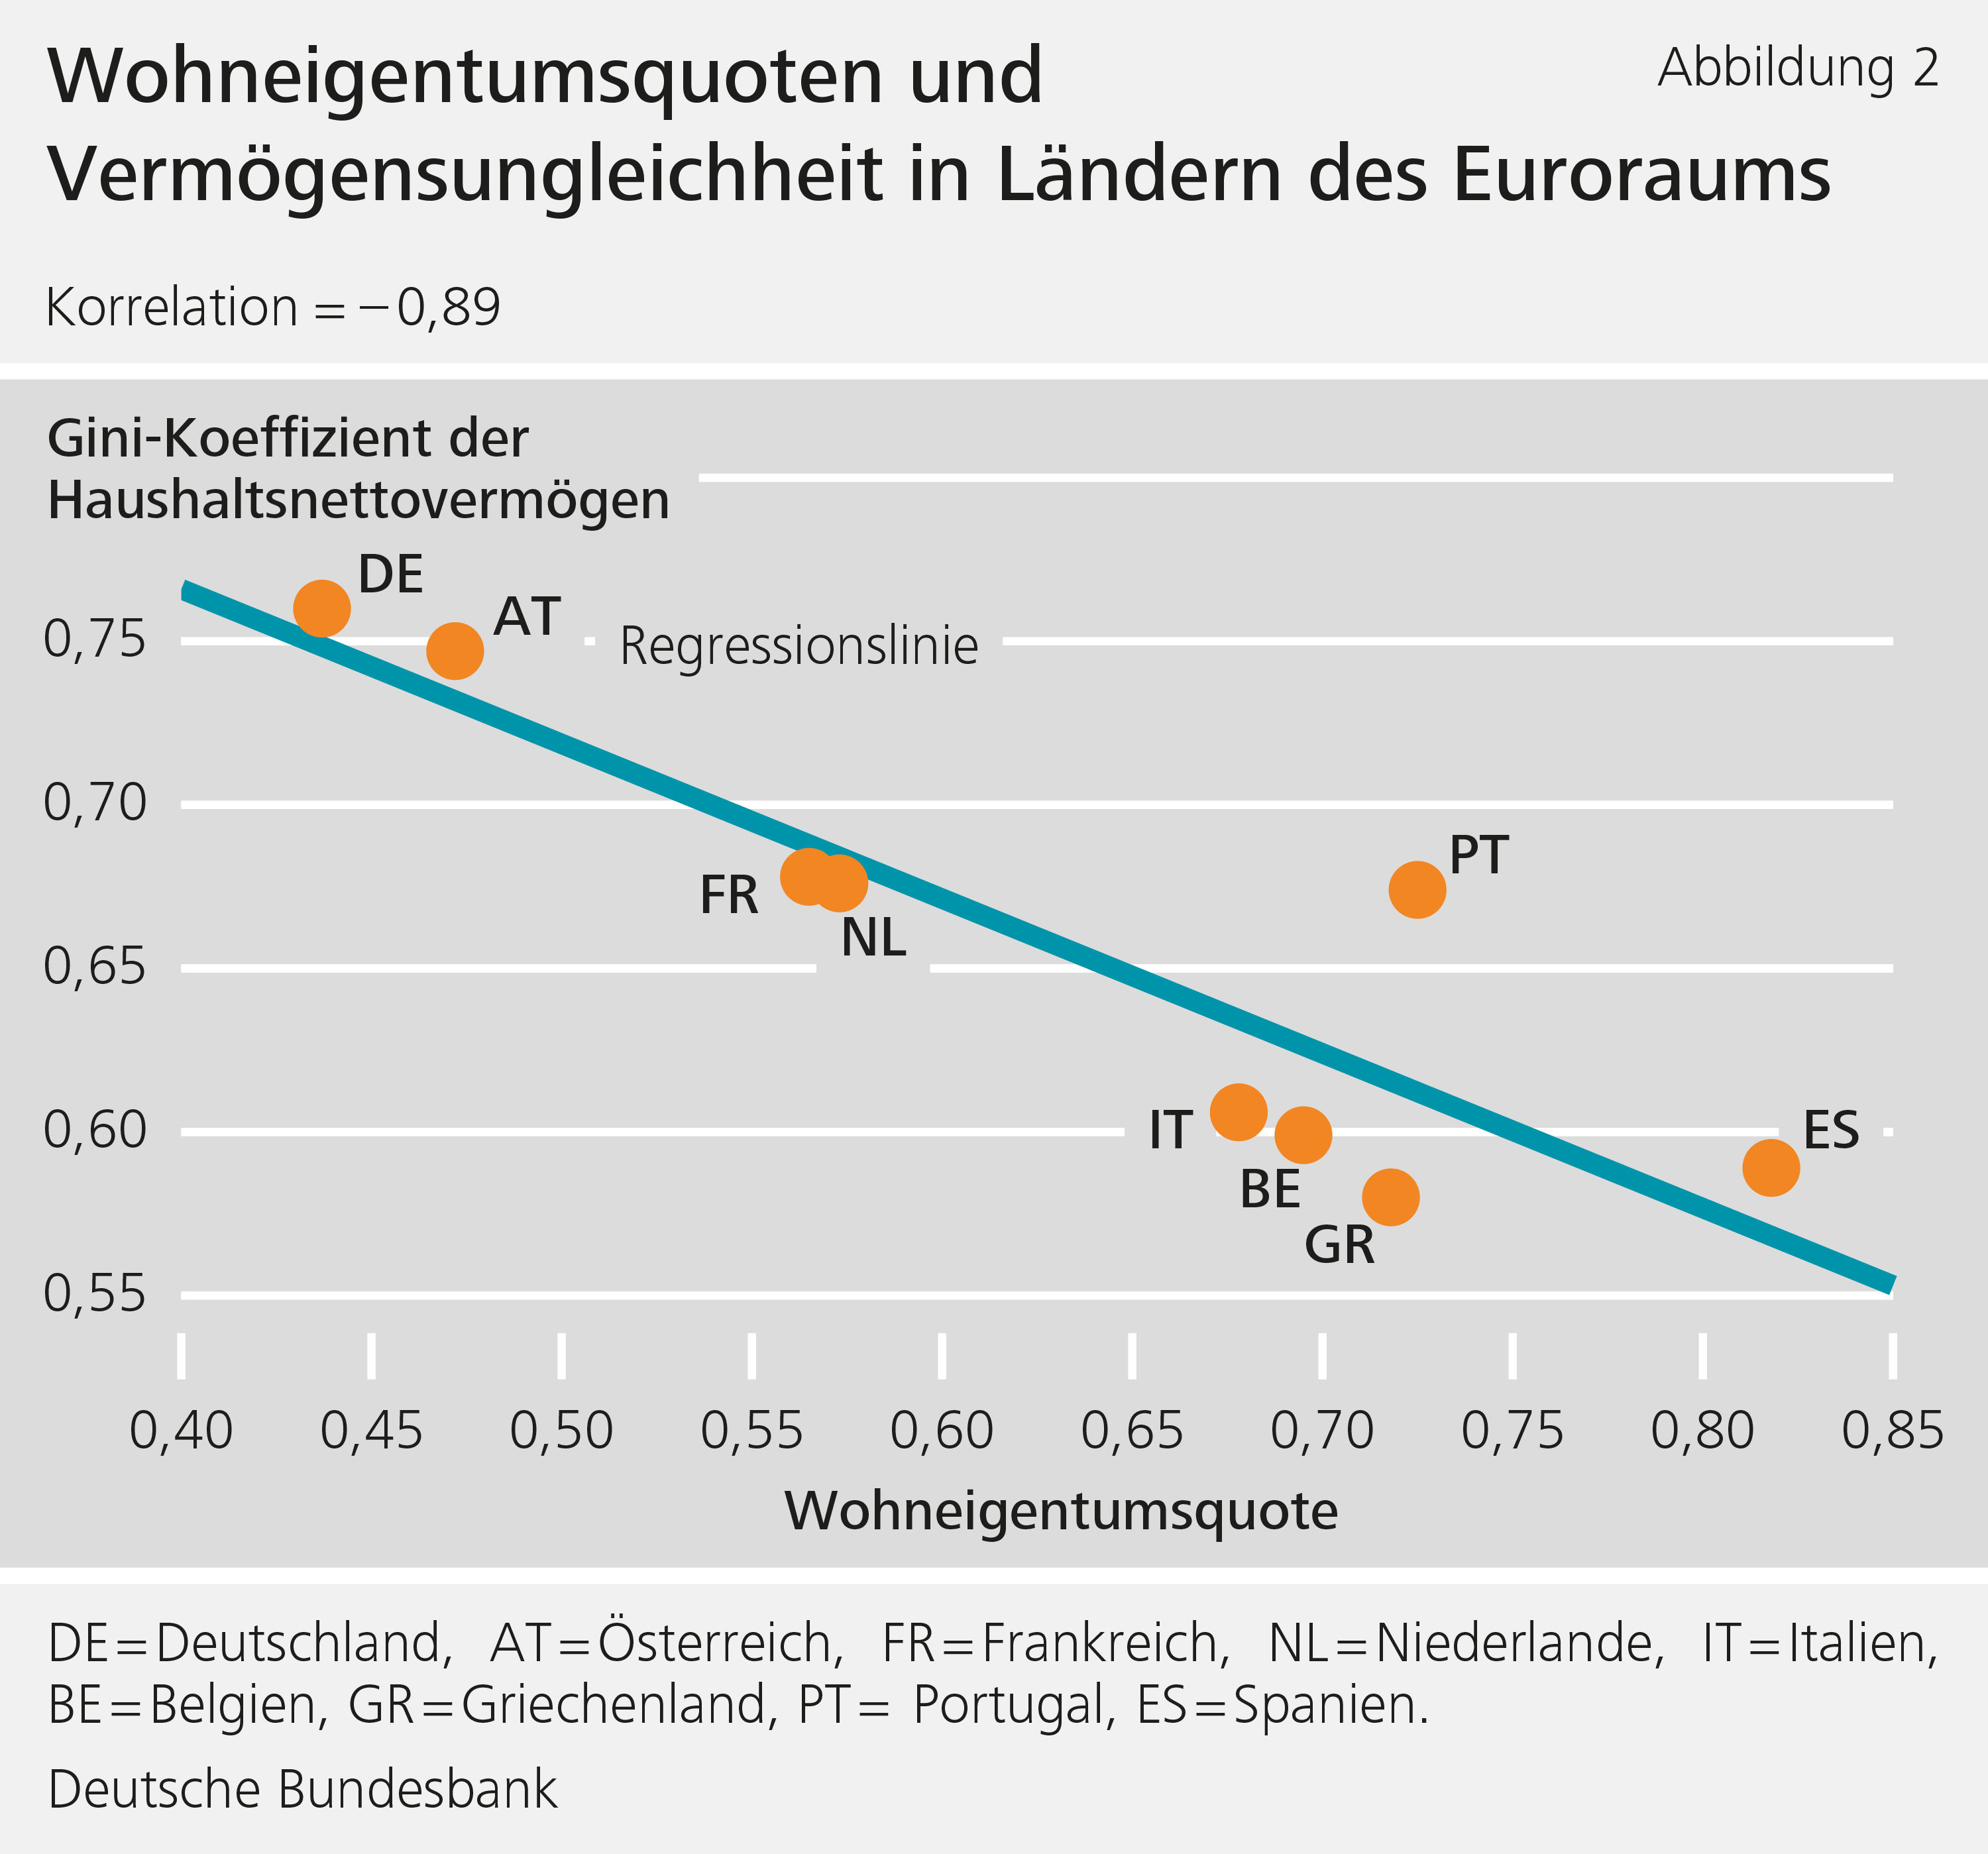 Abbildung 2: Wohneigentumsquoten und Vermögensungleichheit in Ländern des Euroraums